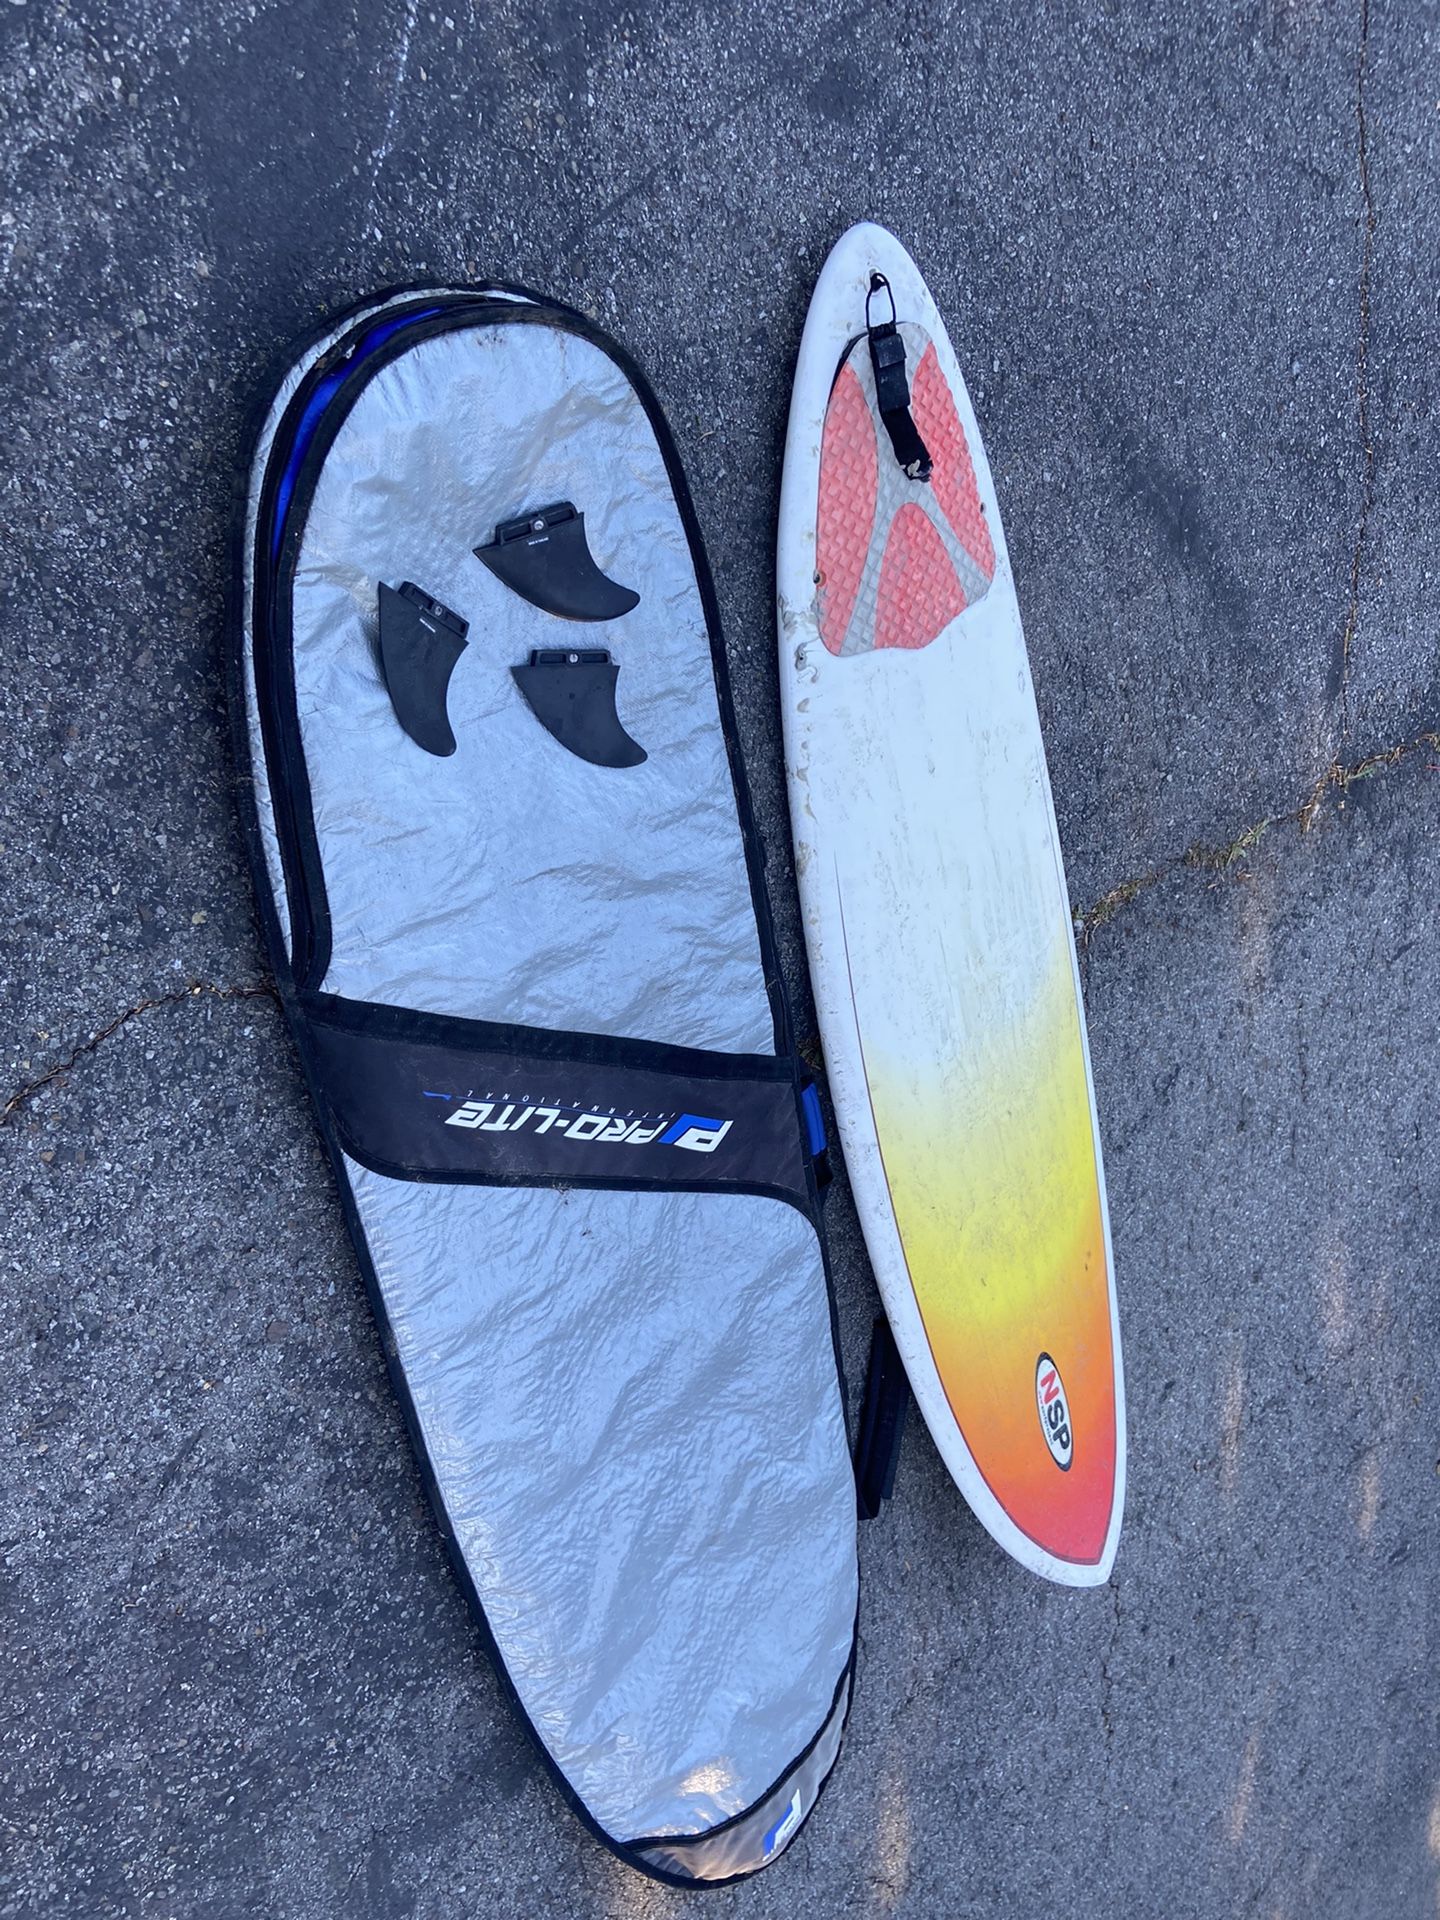 NSP Surfboard 7.2